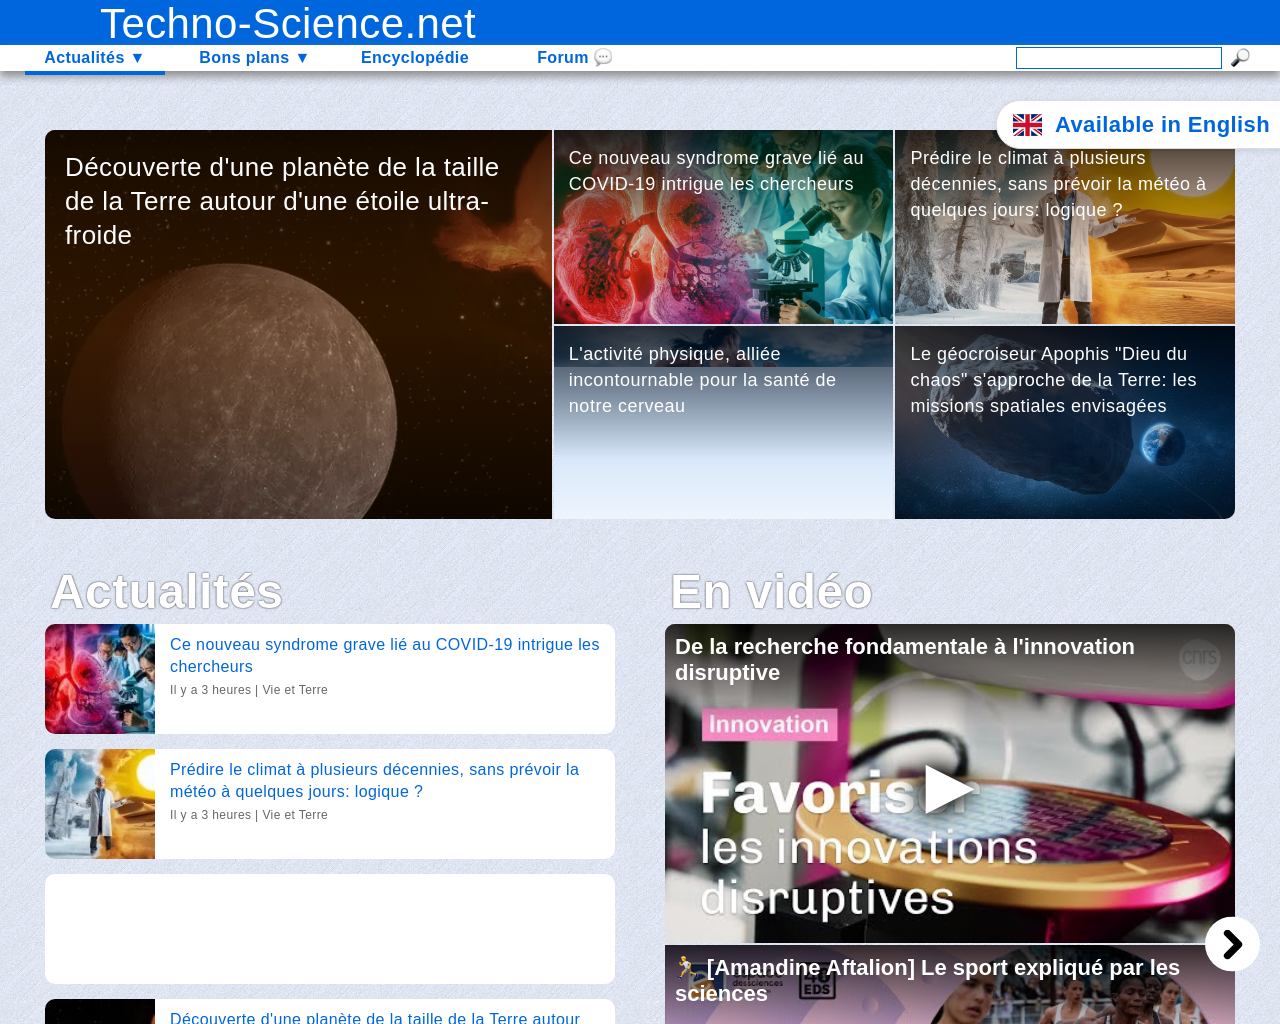 techno-science.net